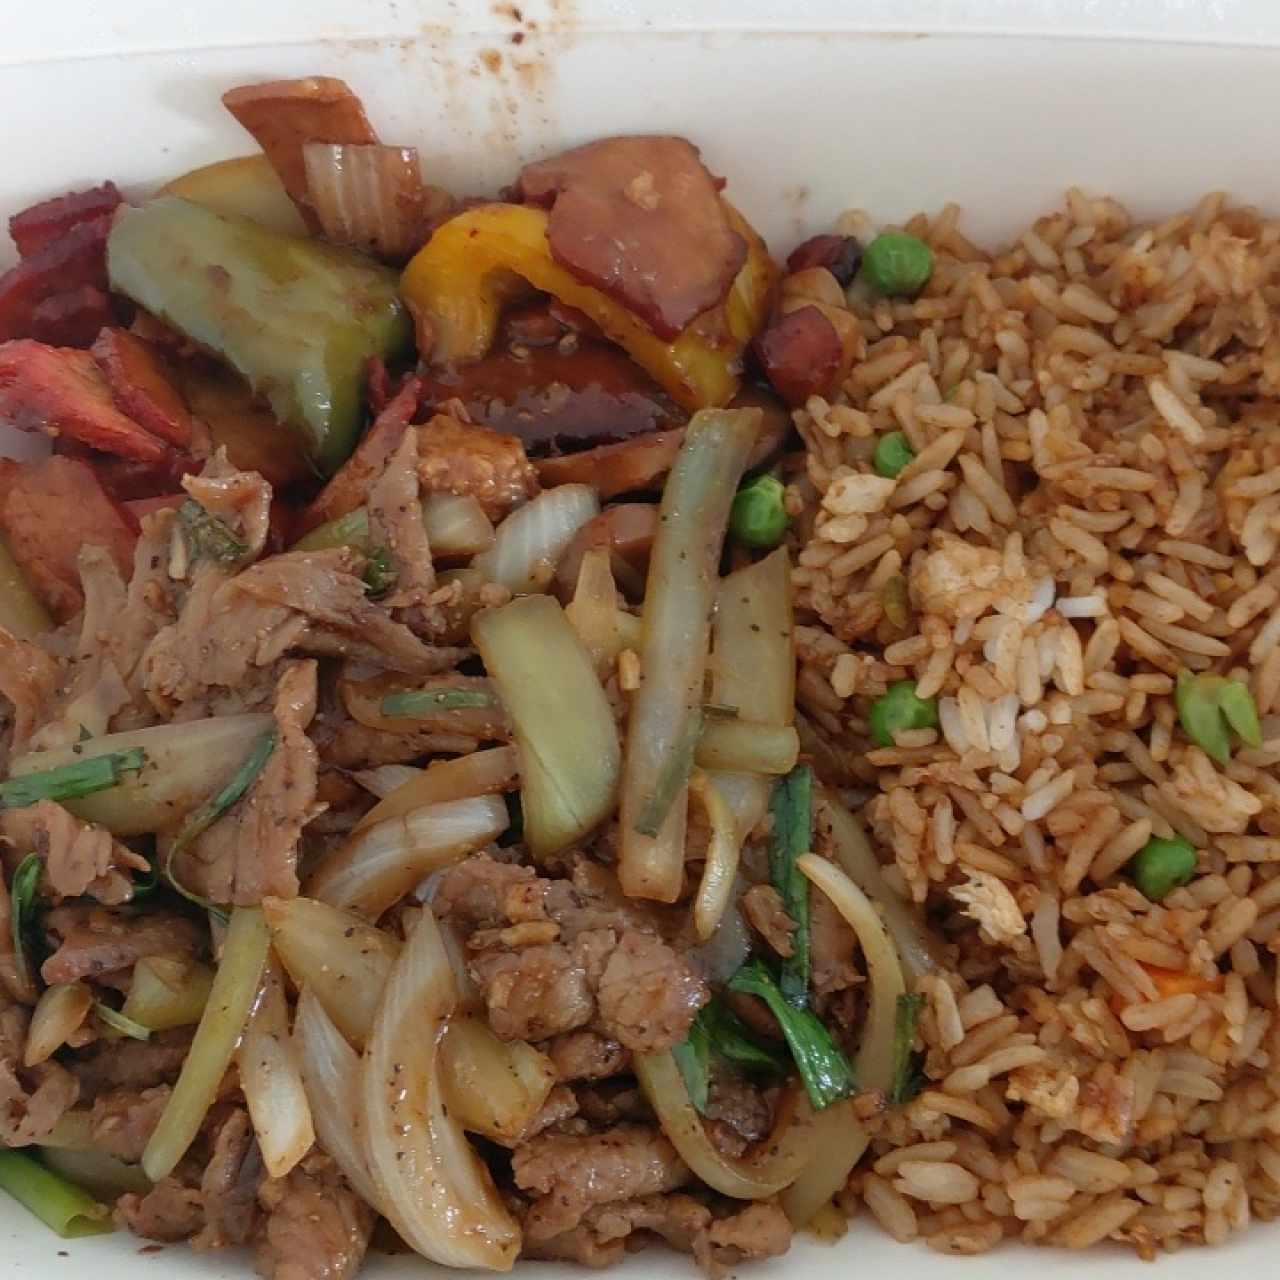 arroz frito con vegetales, puerco asado y carne mongolian